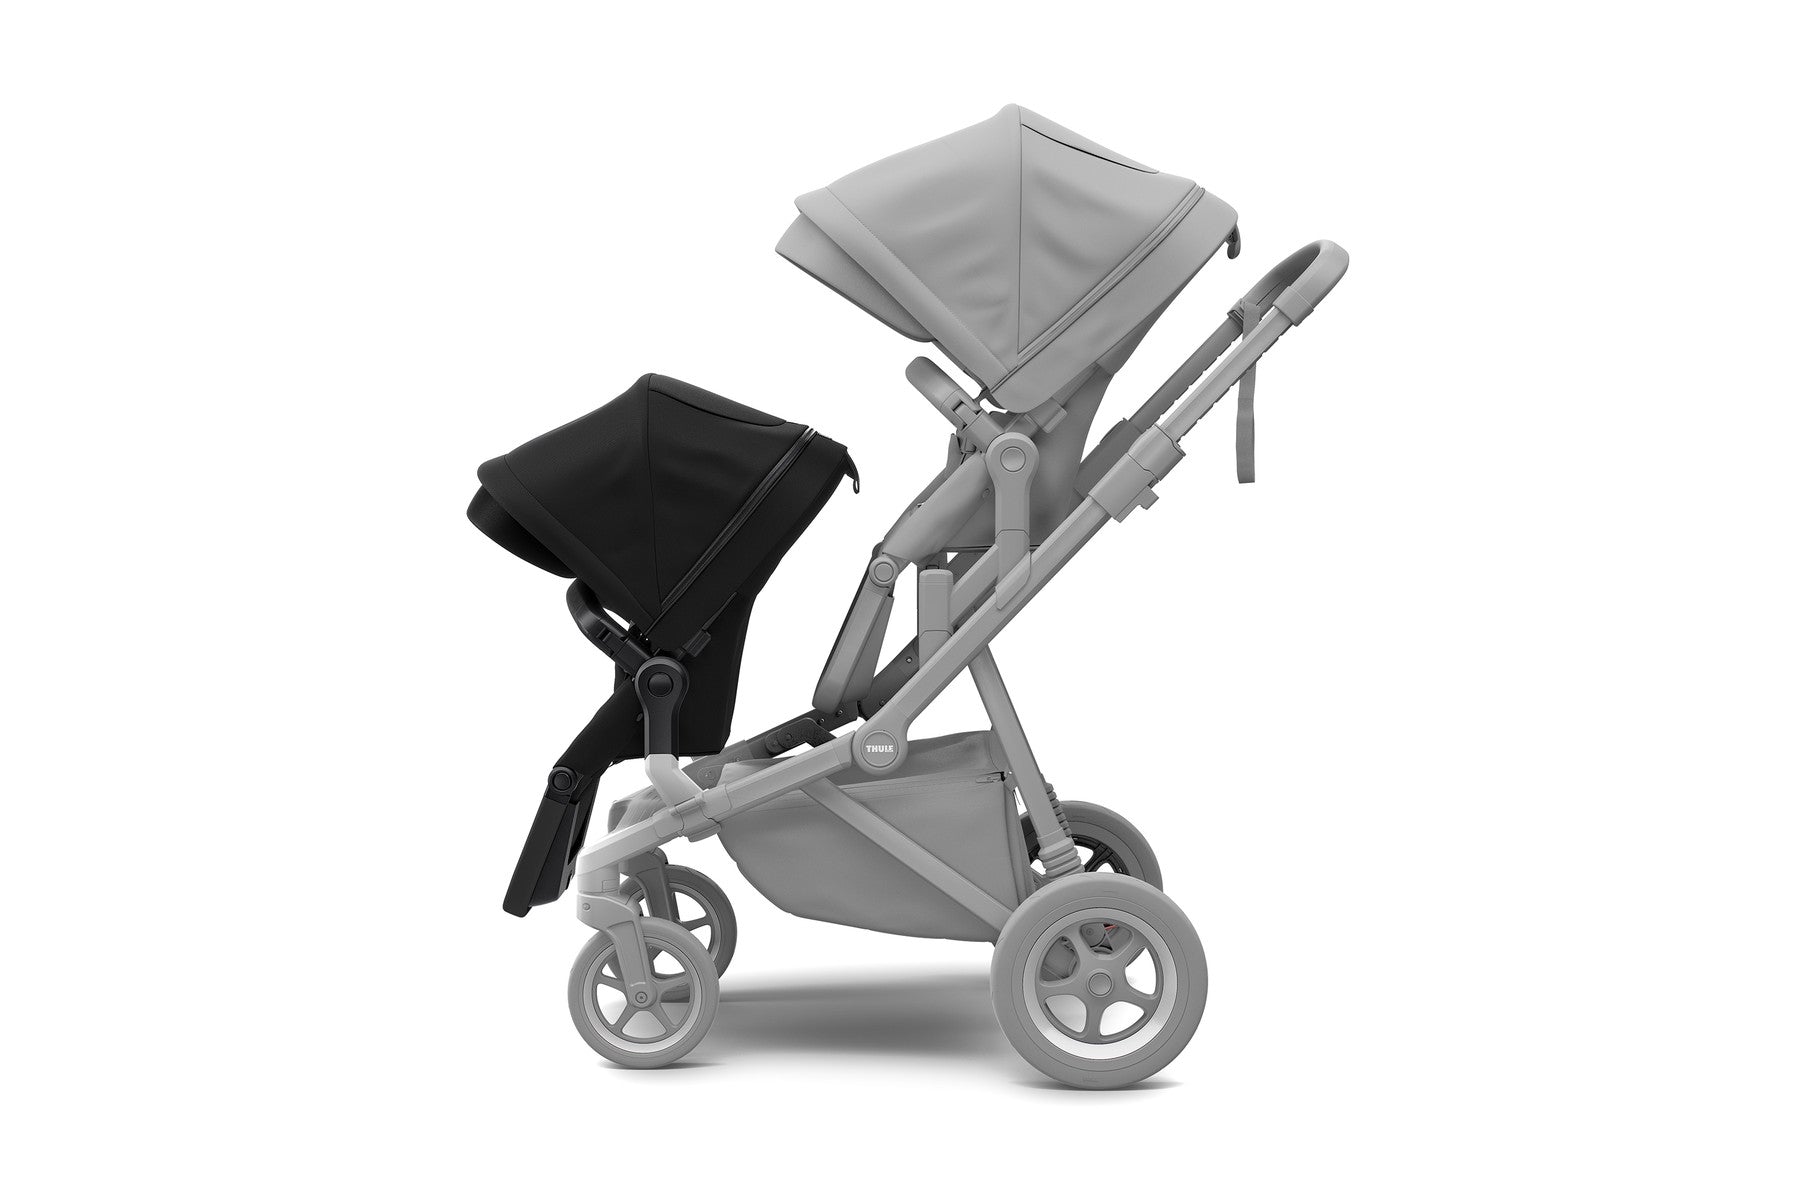 THULE Sleek Stroller Sibling Seat - ANB Baby -$100 - $300